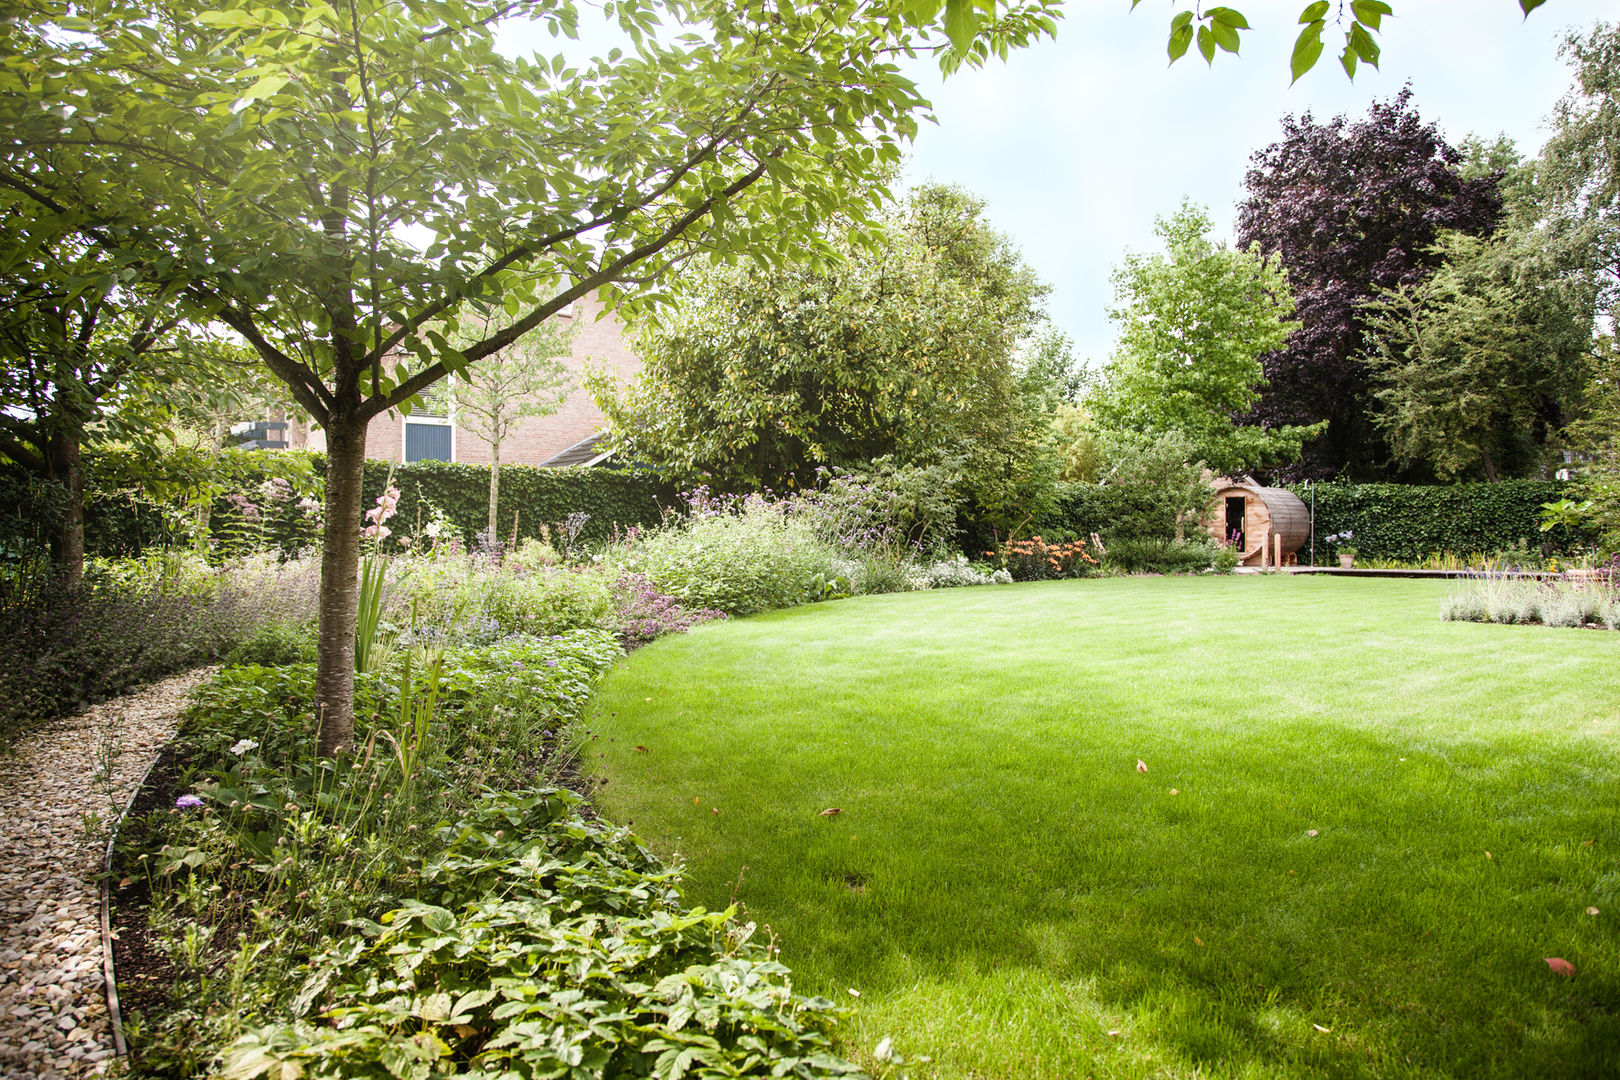 Wellness tuin verbonden met het landschap, Studio REDD exclusieve tuinen Studio REDD exclusieve tuinen حديقة